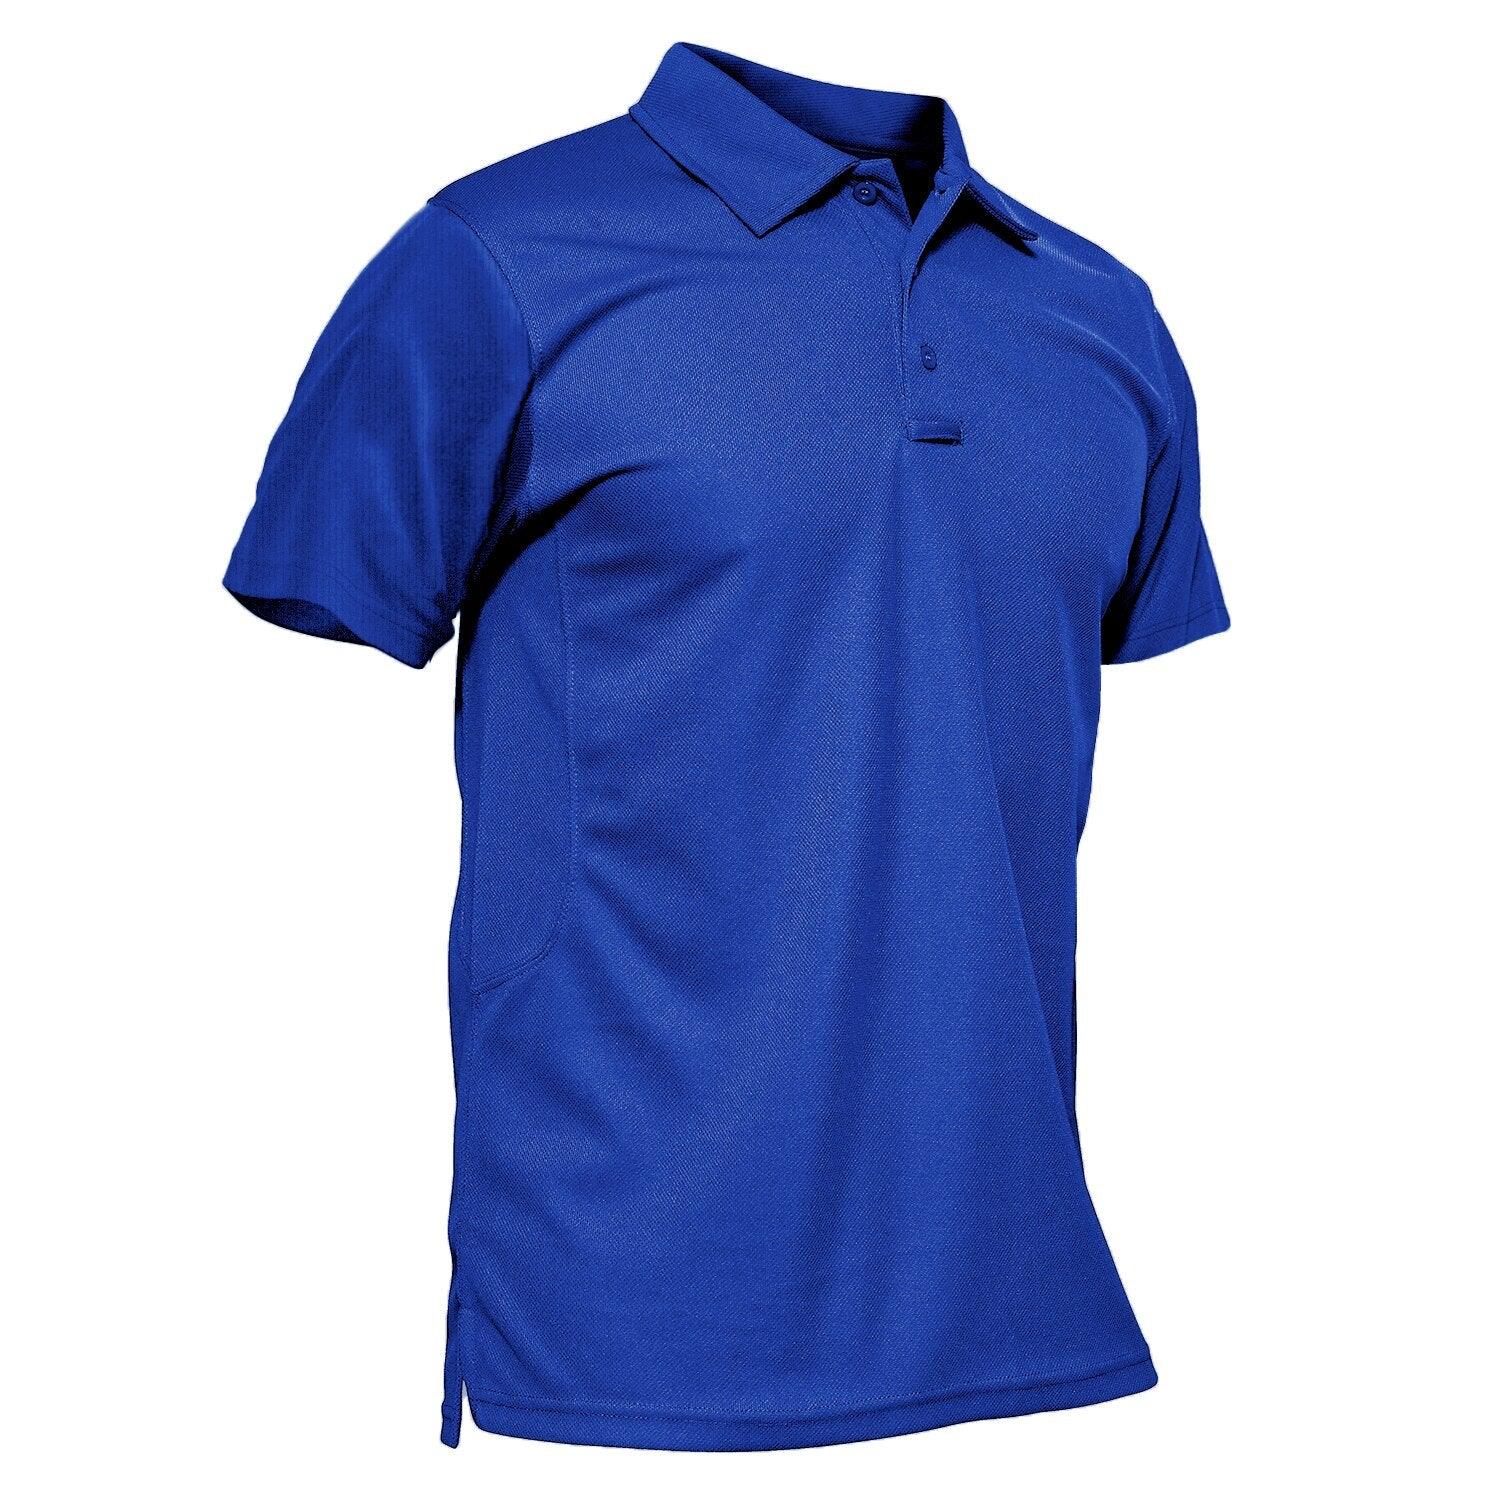 Balerz TACVASEN Summer Men's Polo Shirt Quick Dry Performance Short Sleeve Tactical Shirts Pique Jersey Golf Shirt